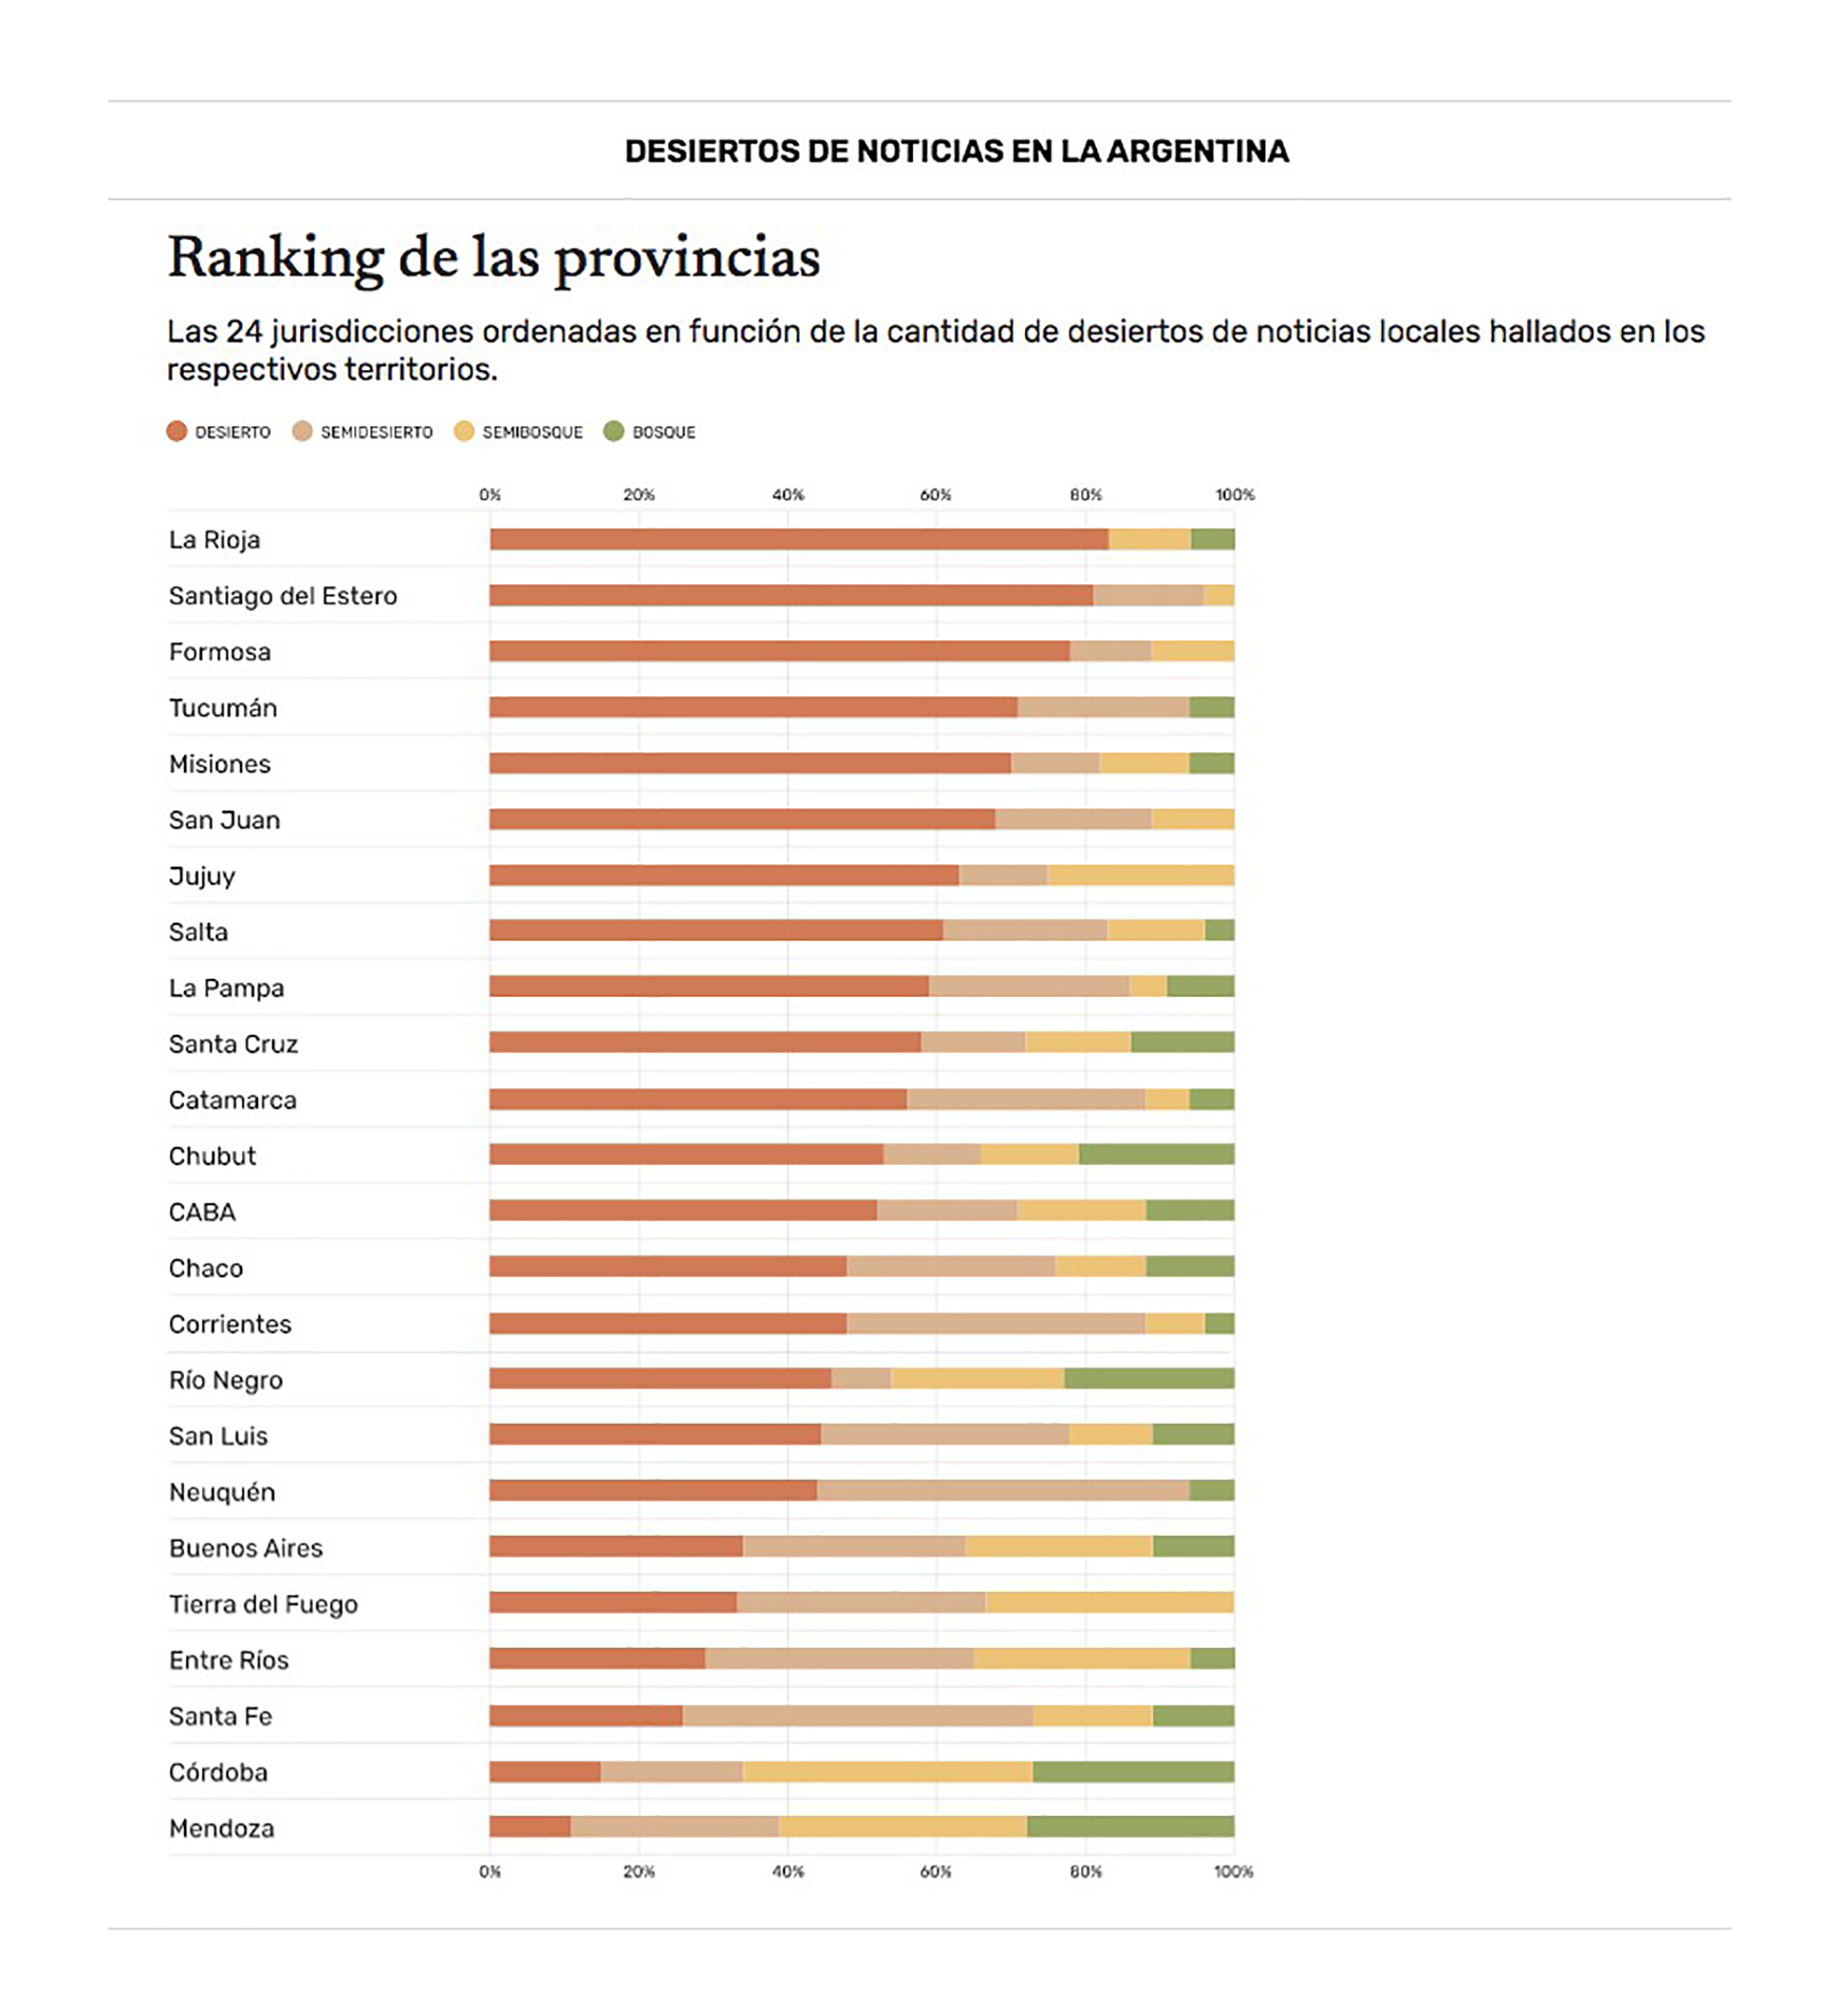 Ranking de provincias en relación a la calidad del periodismo local, según el estudio de Fopea y Google.